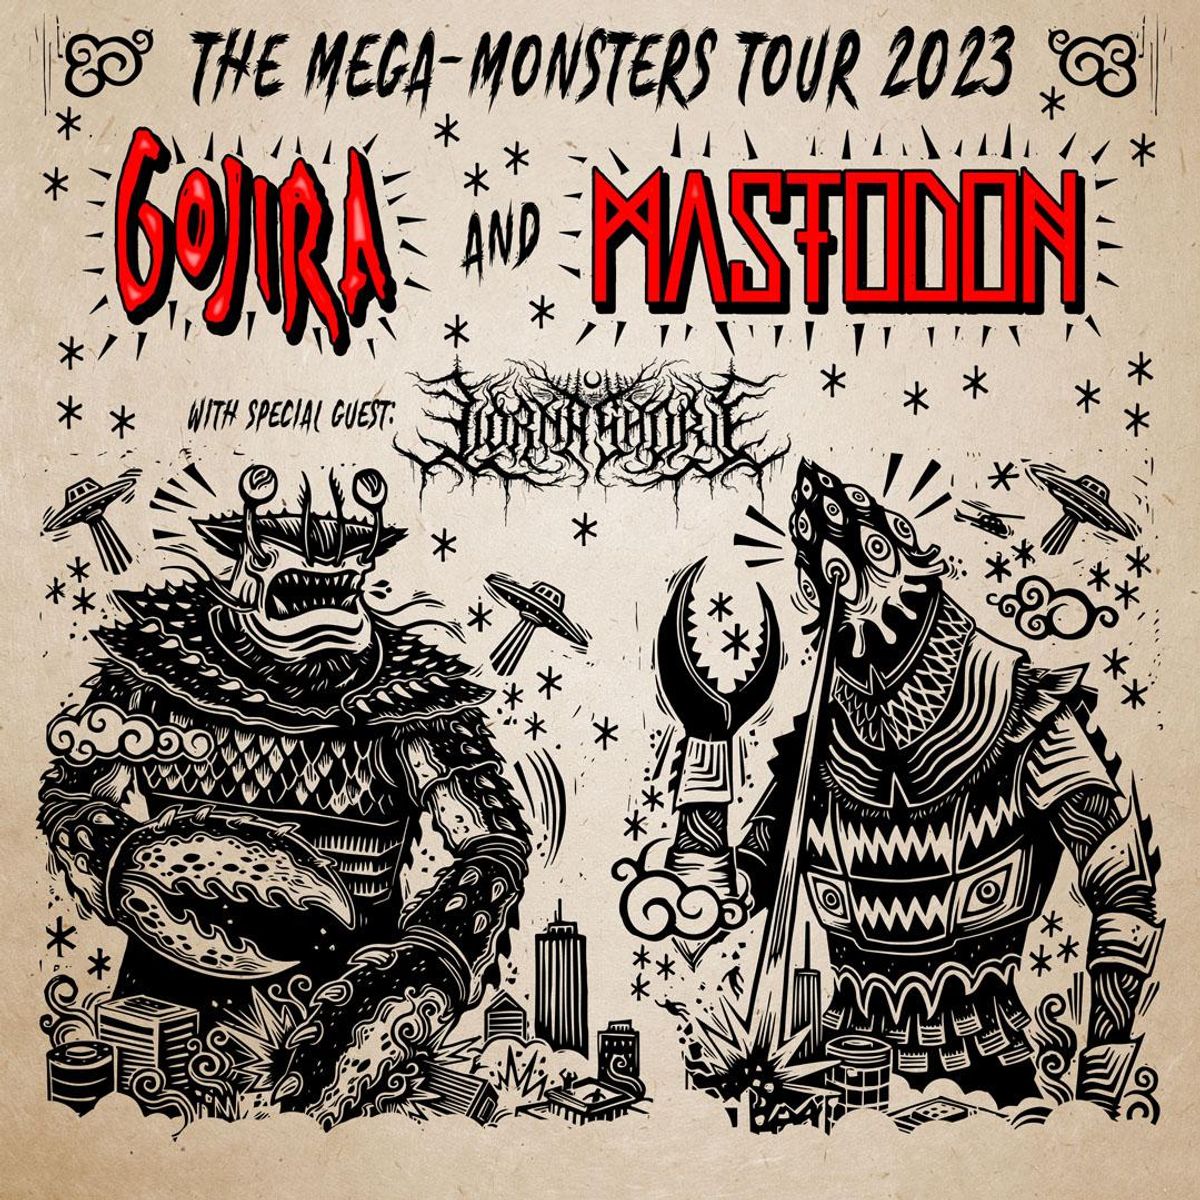 mastodon tour tickets